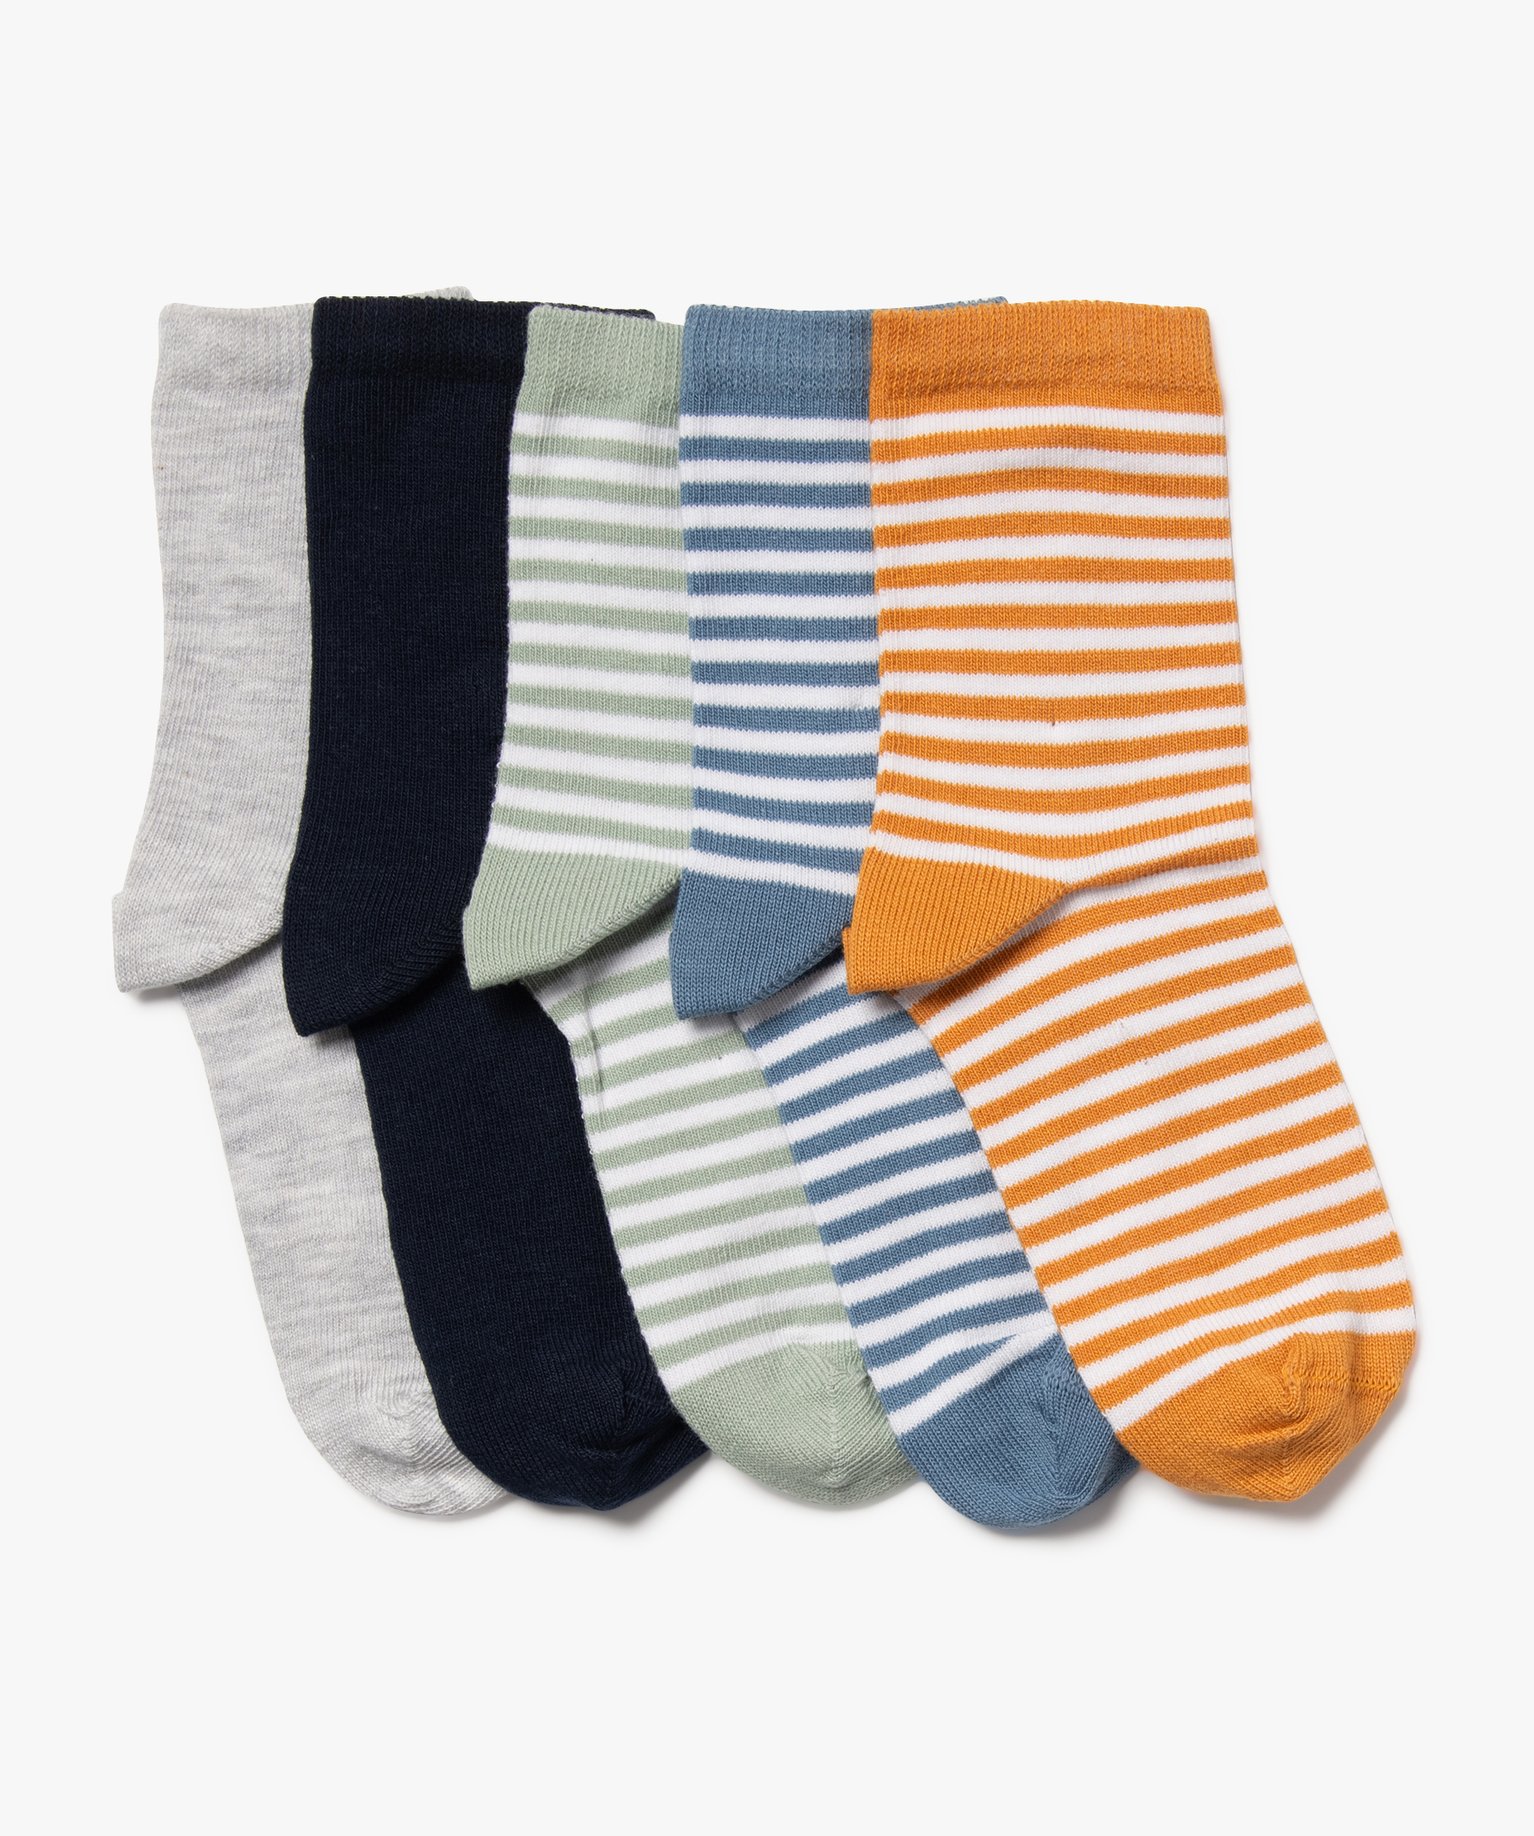 Chaussettes à rayures garçon (lot de 5) - 31/34 - multicolore - GEMO